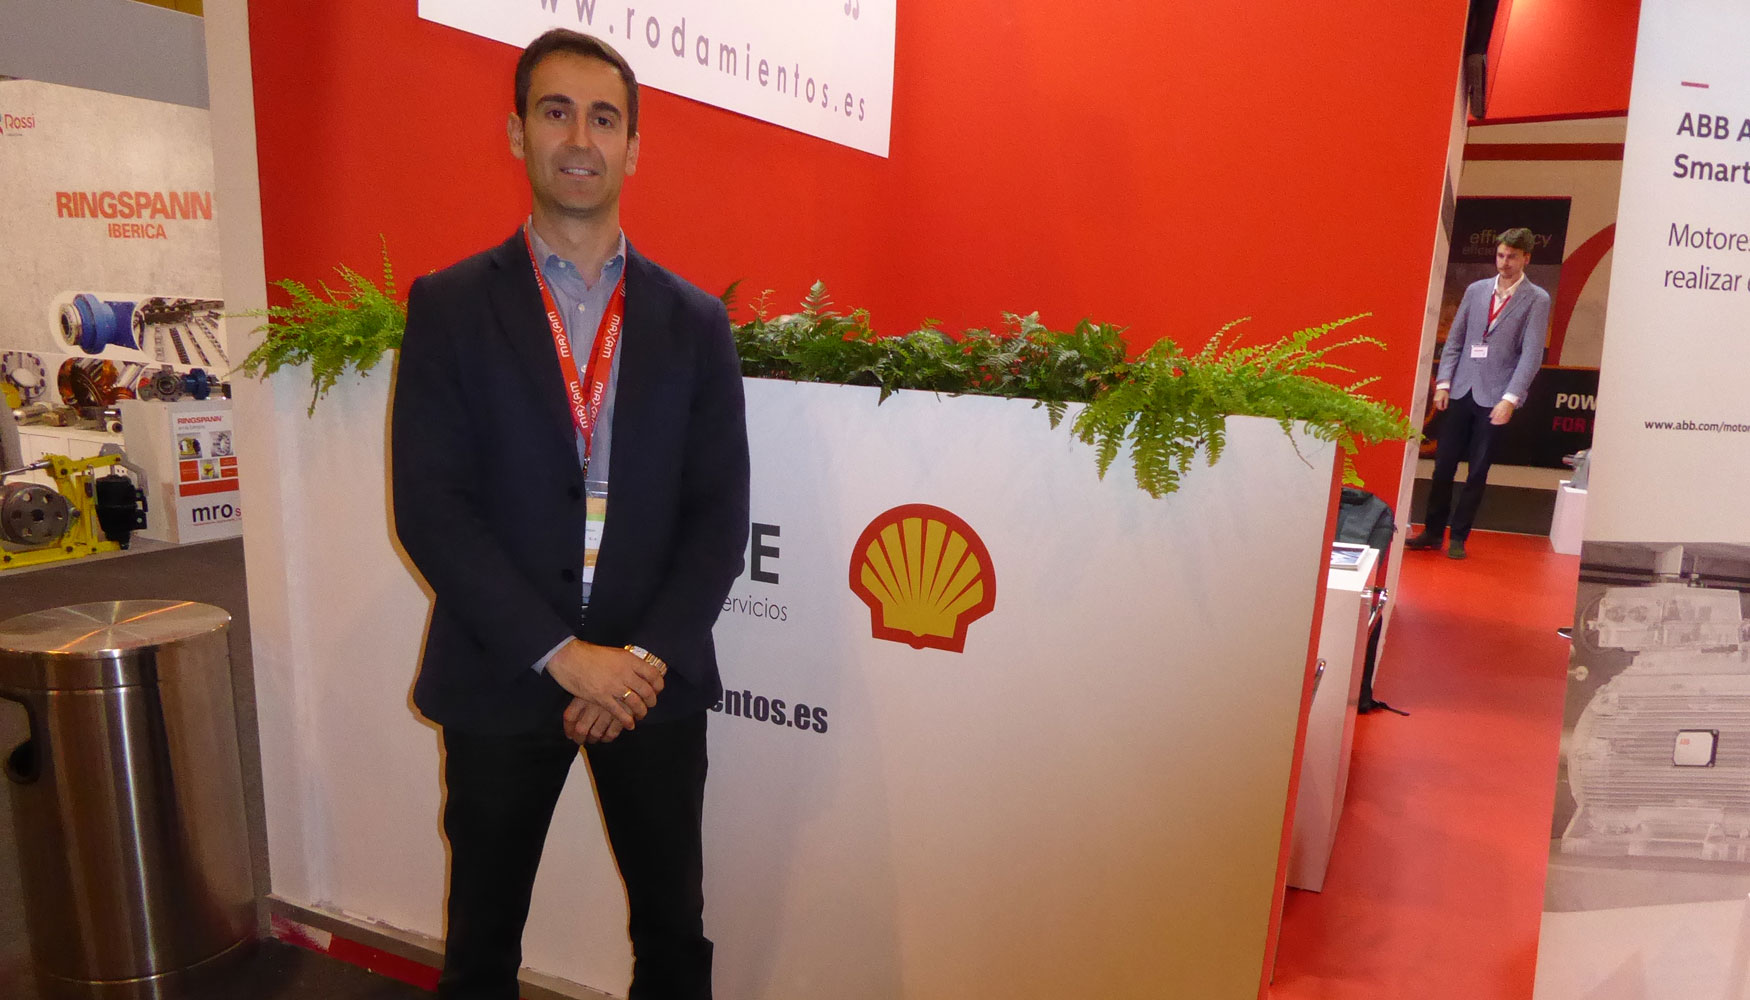 Pedro del Amo Alonso, lubricants technical advisor en Shell Espaa